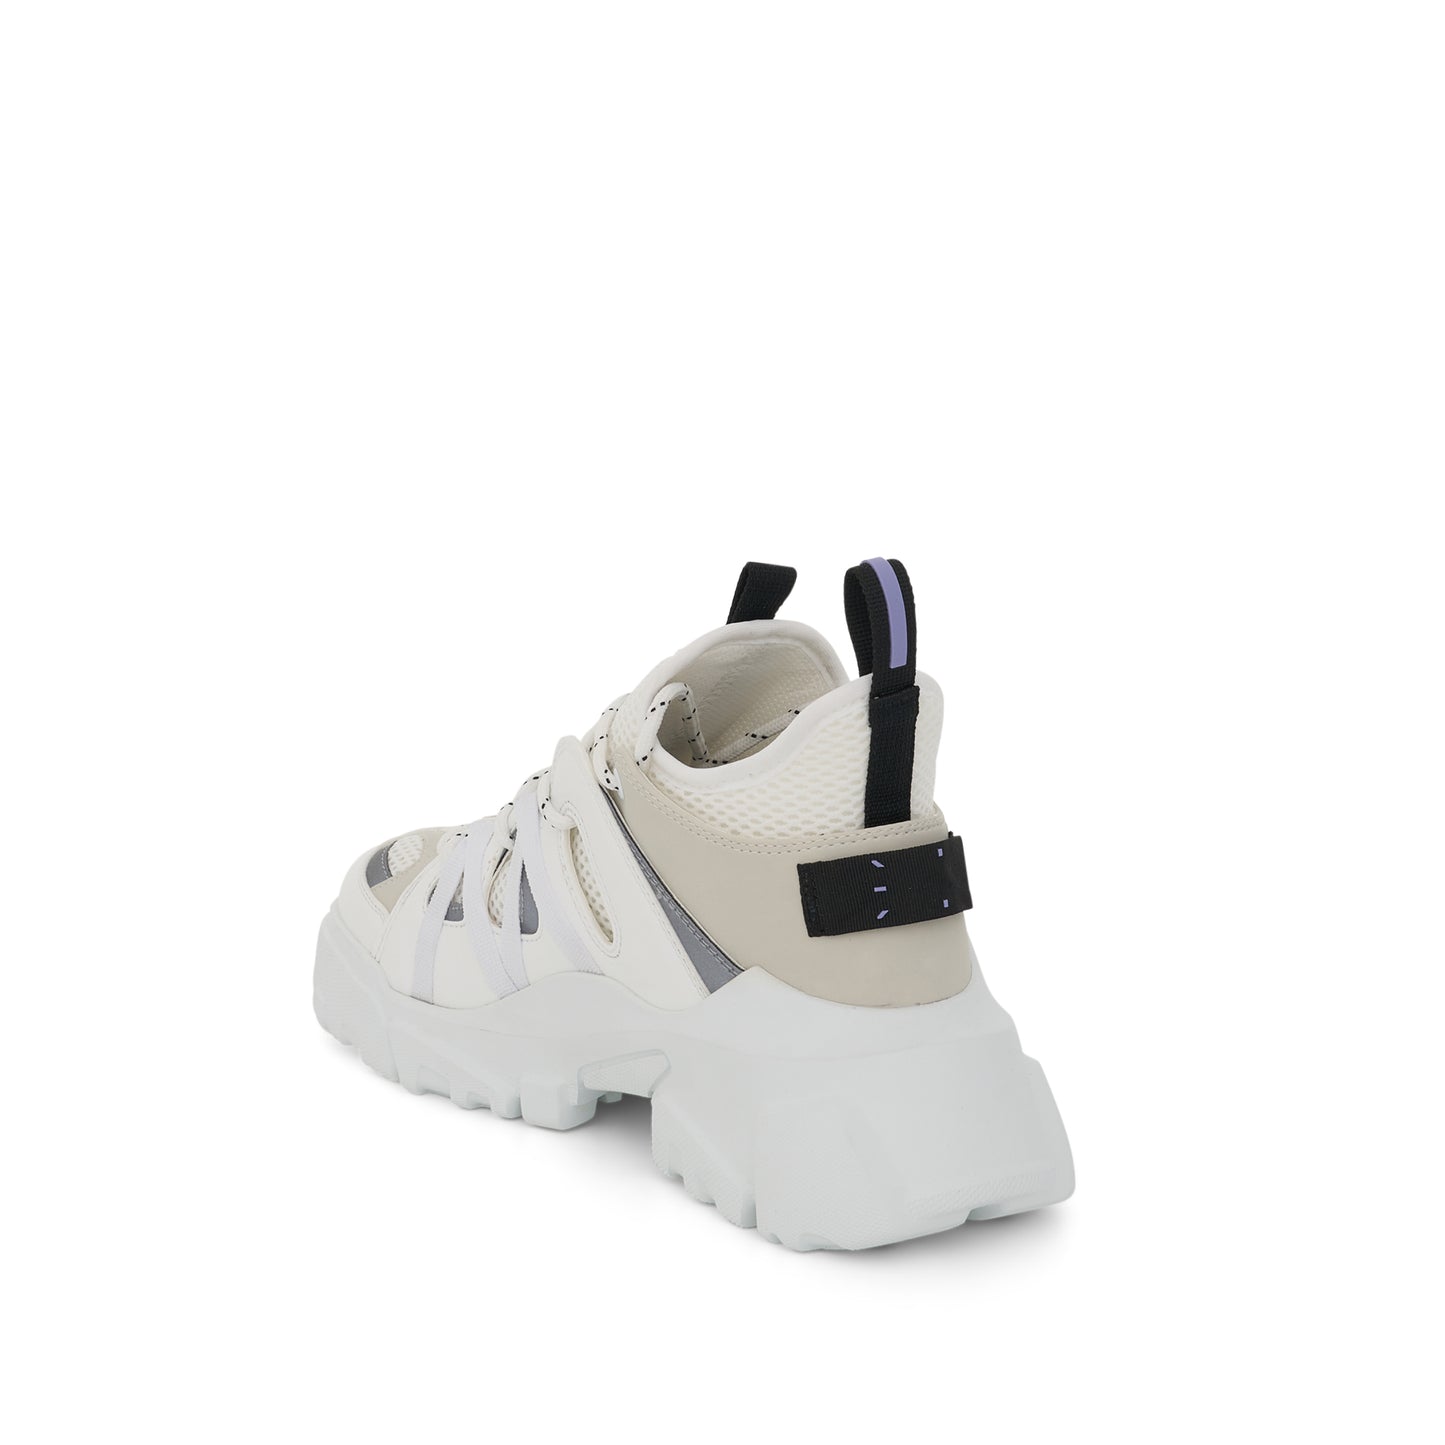 Orbyt 2.0 Sneaker in White